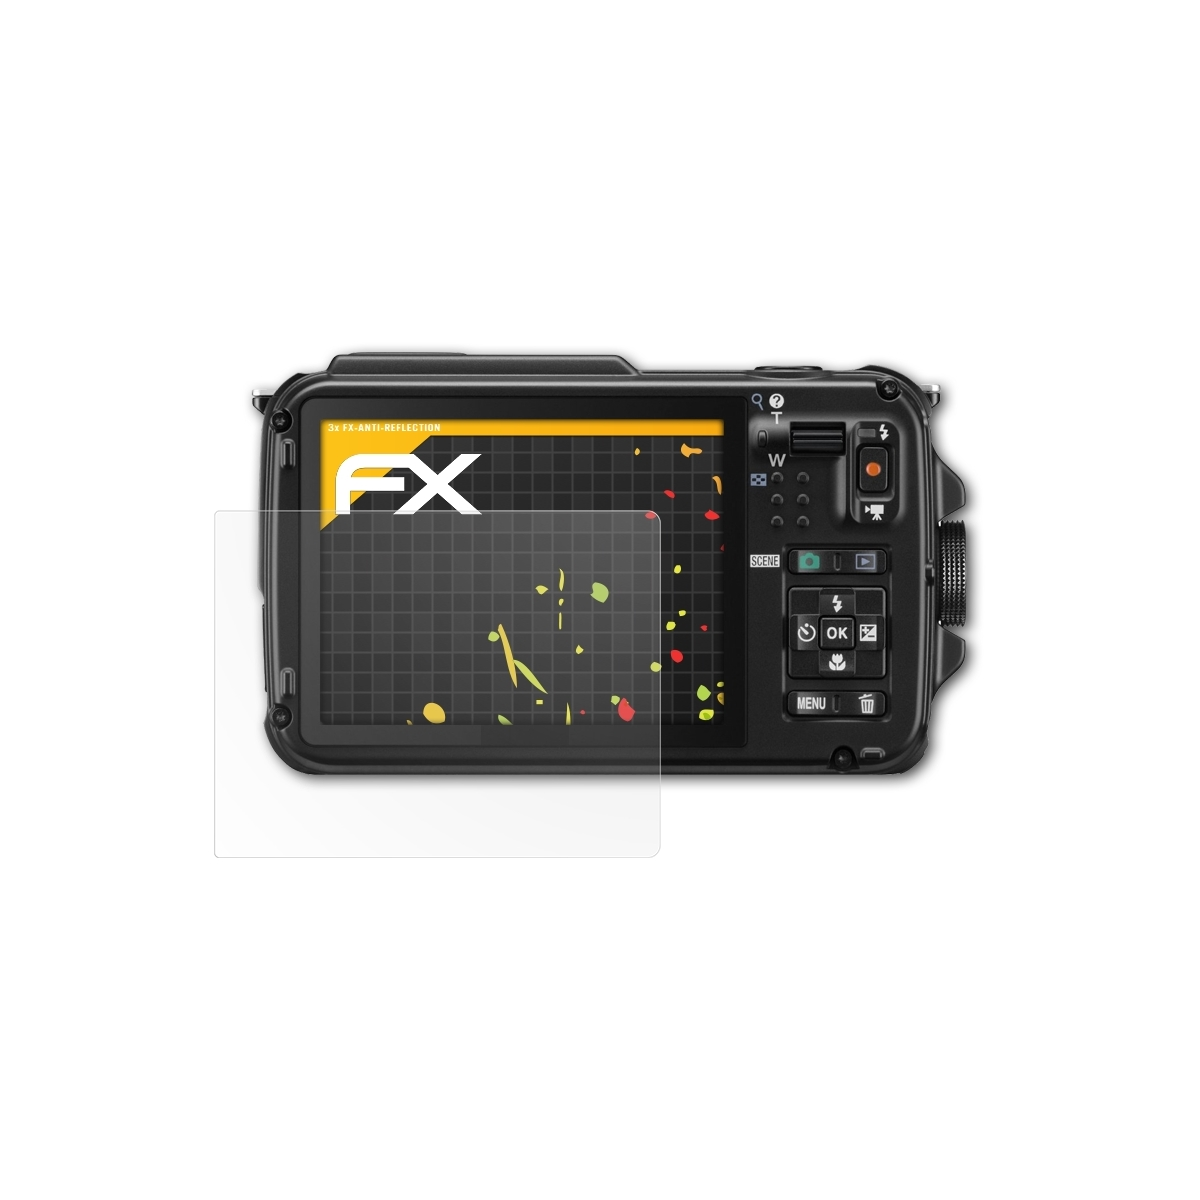 3x Coolpix Displayschutz(für ATFOLIX AW110) FX-Antireflex Nikon